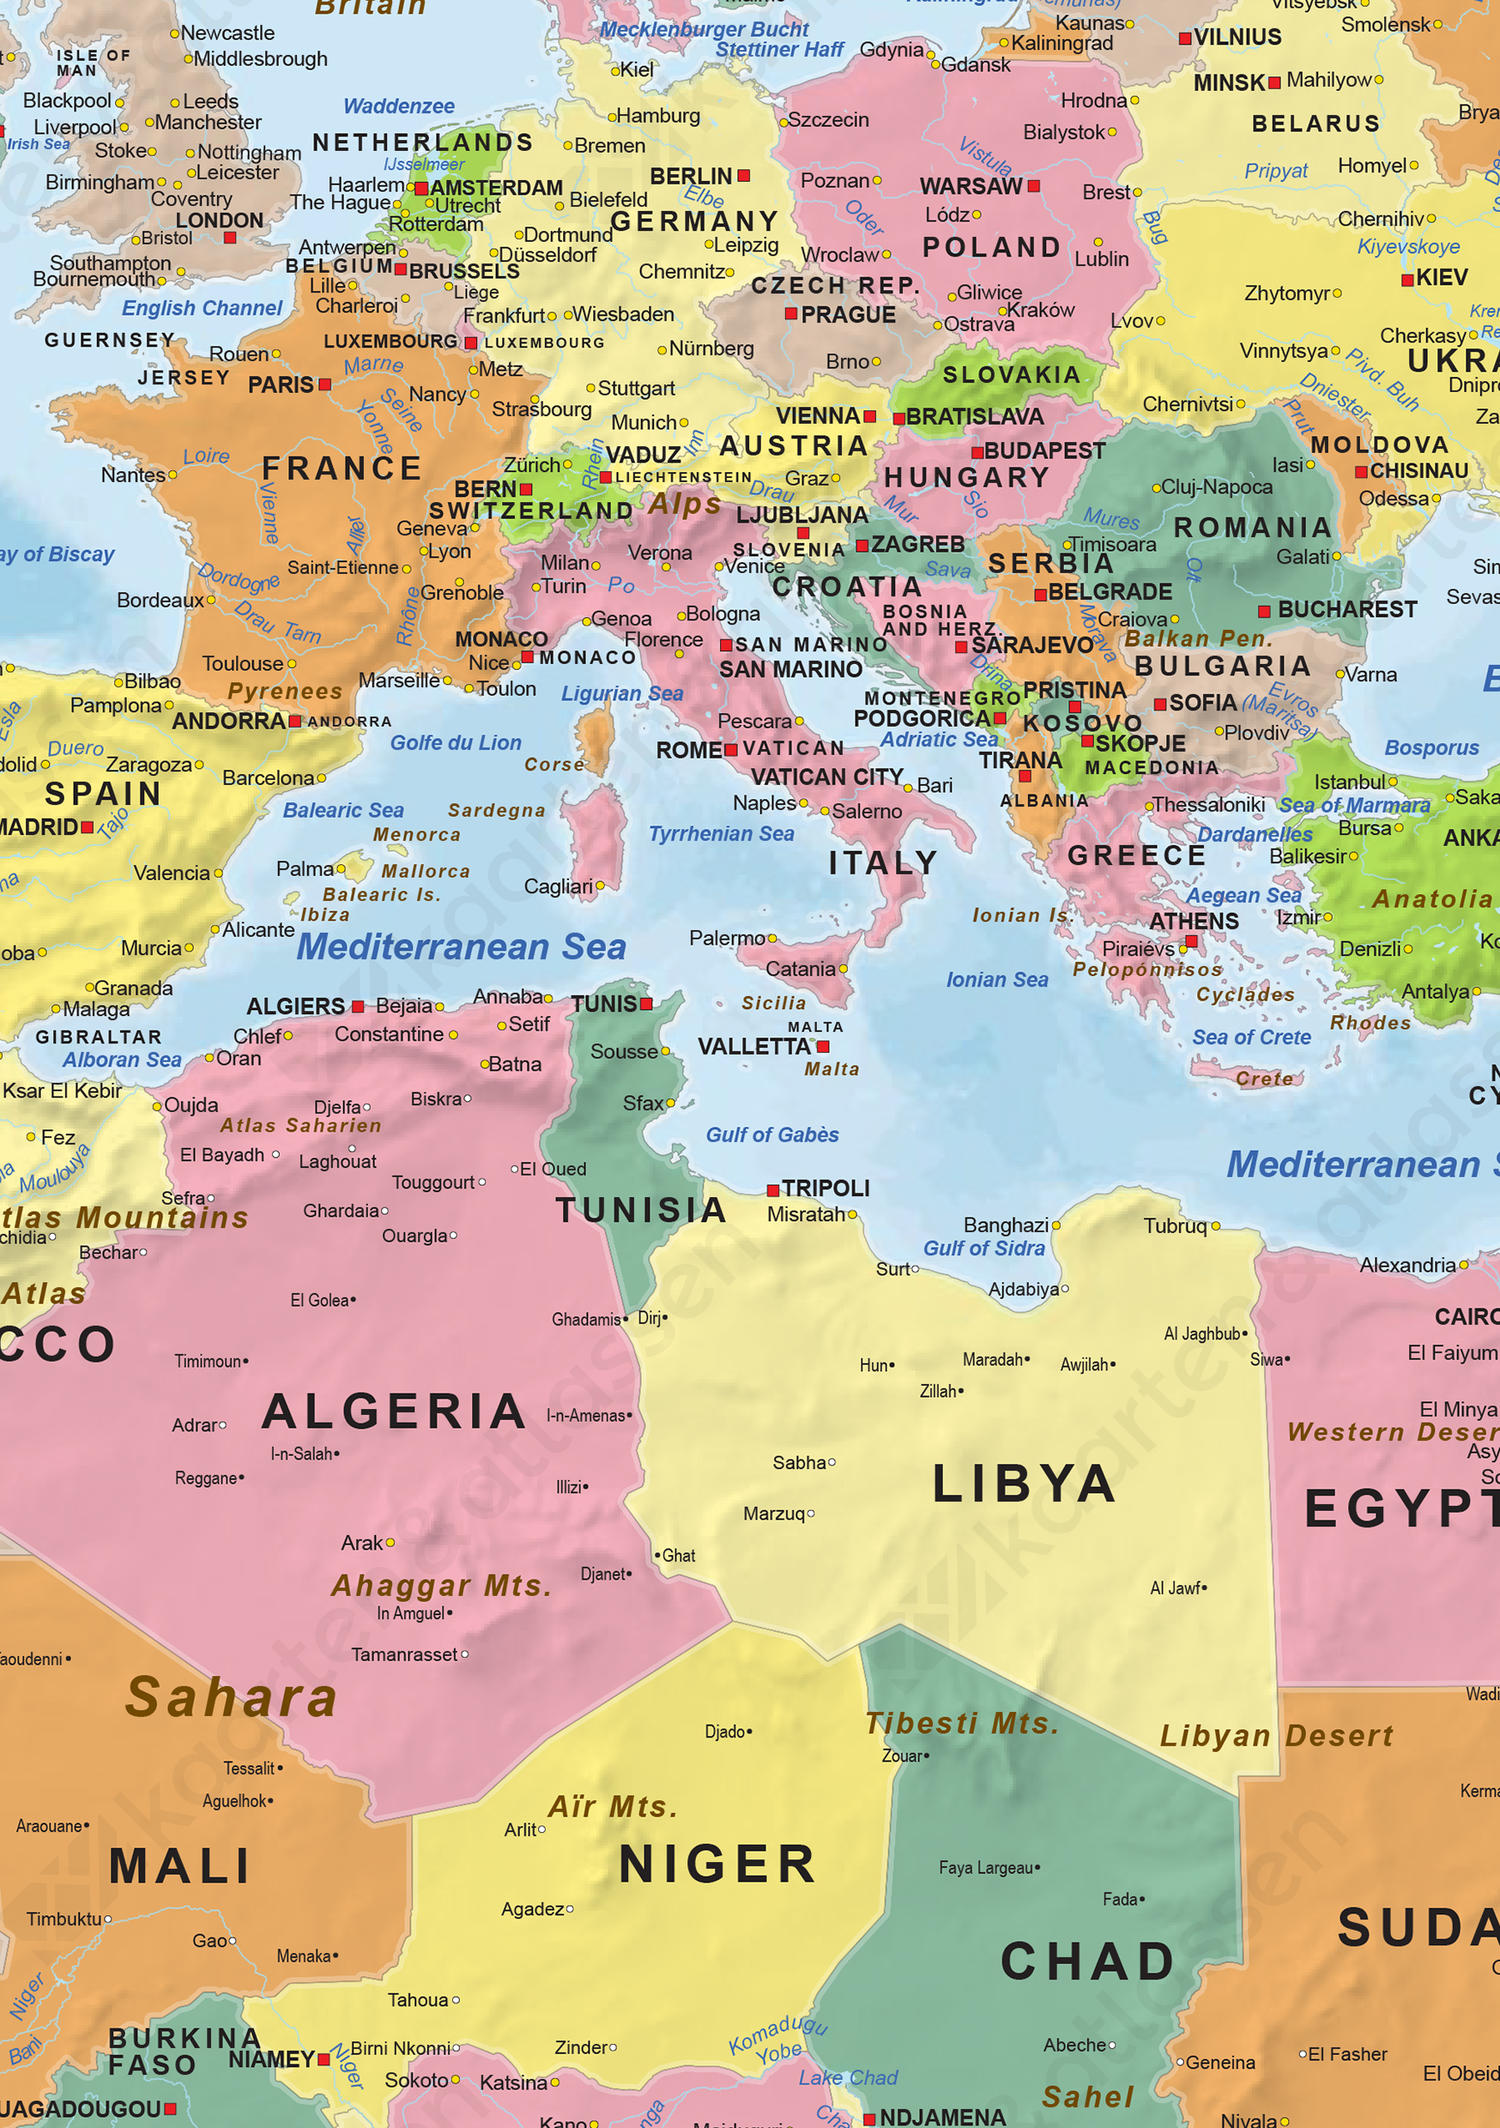 digitale Staatkundige wereldkaart met veel details